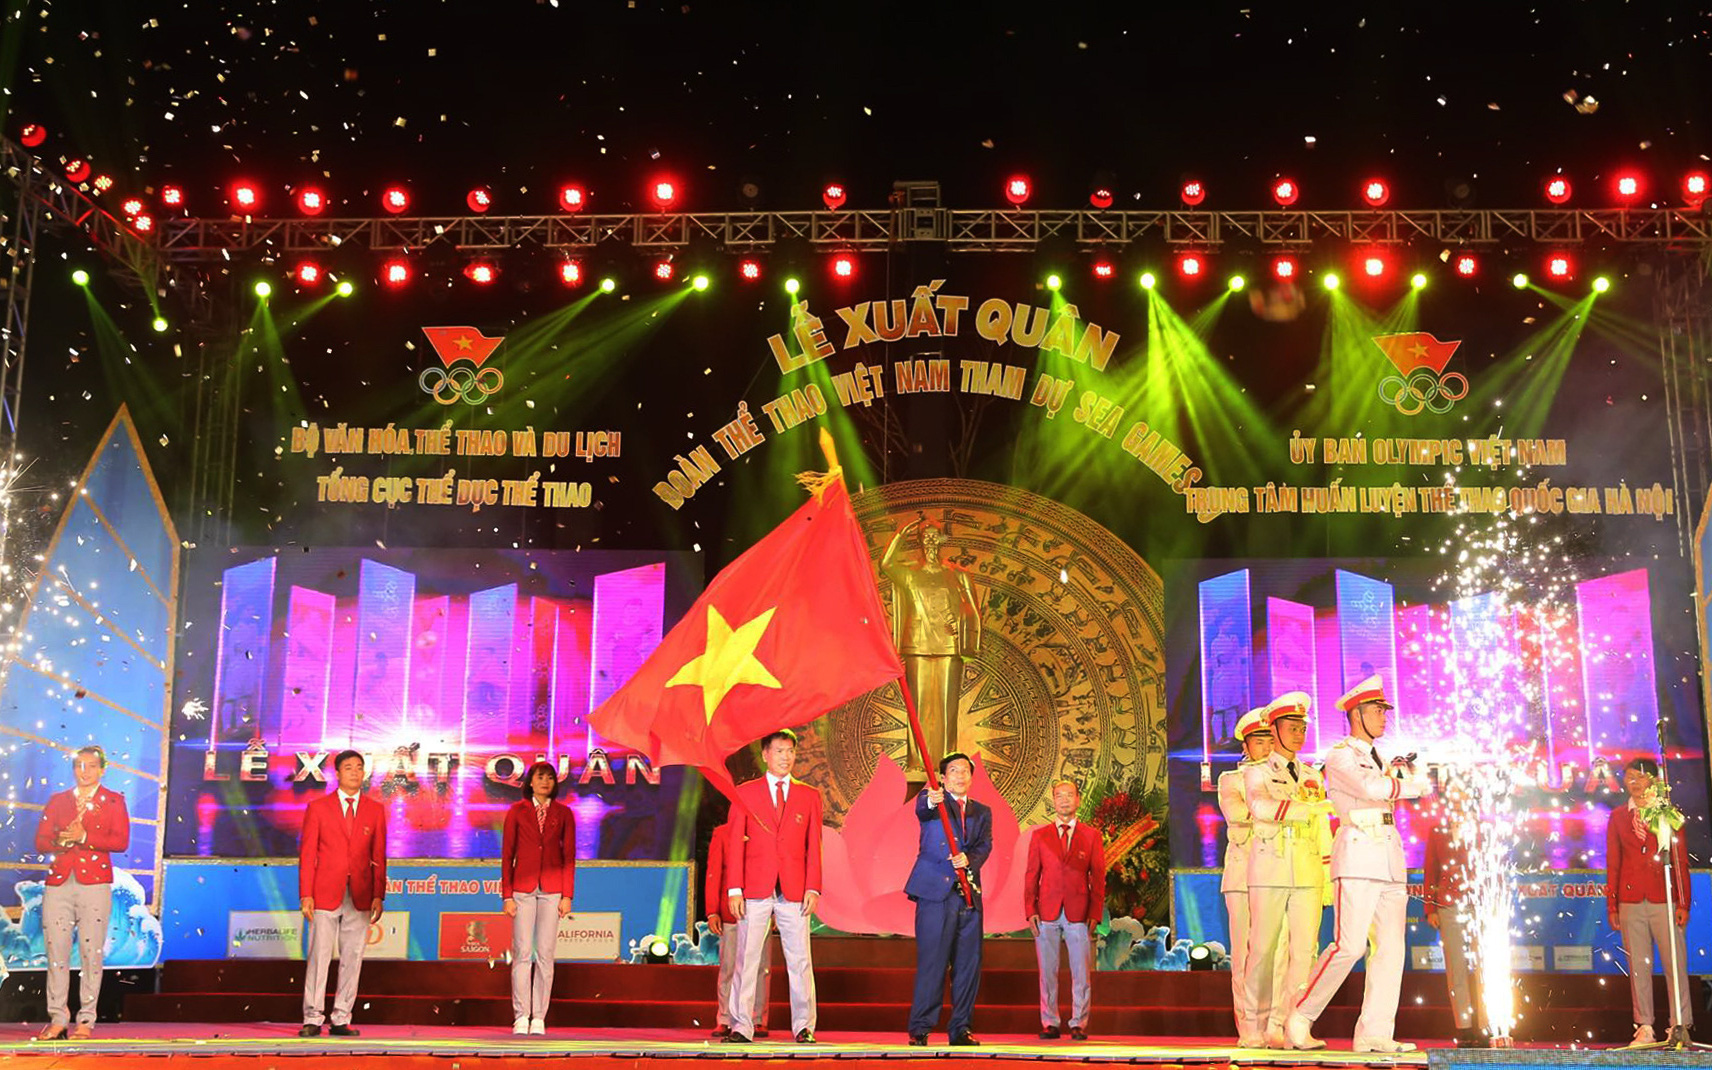 Bộ trưởng Nguyễn Ngọc Thiện: “Hành trình của Đoàn Thể thao Việt Nam luôn có sự dõi theo của hàng triệu trái tim người yêu thể thao nước nhà”